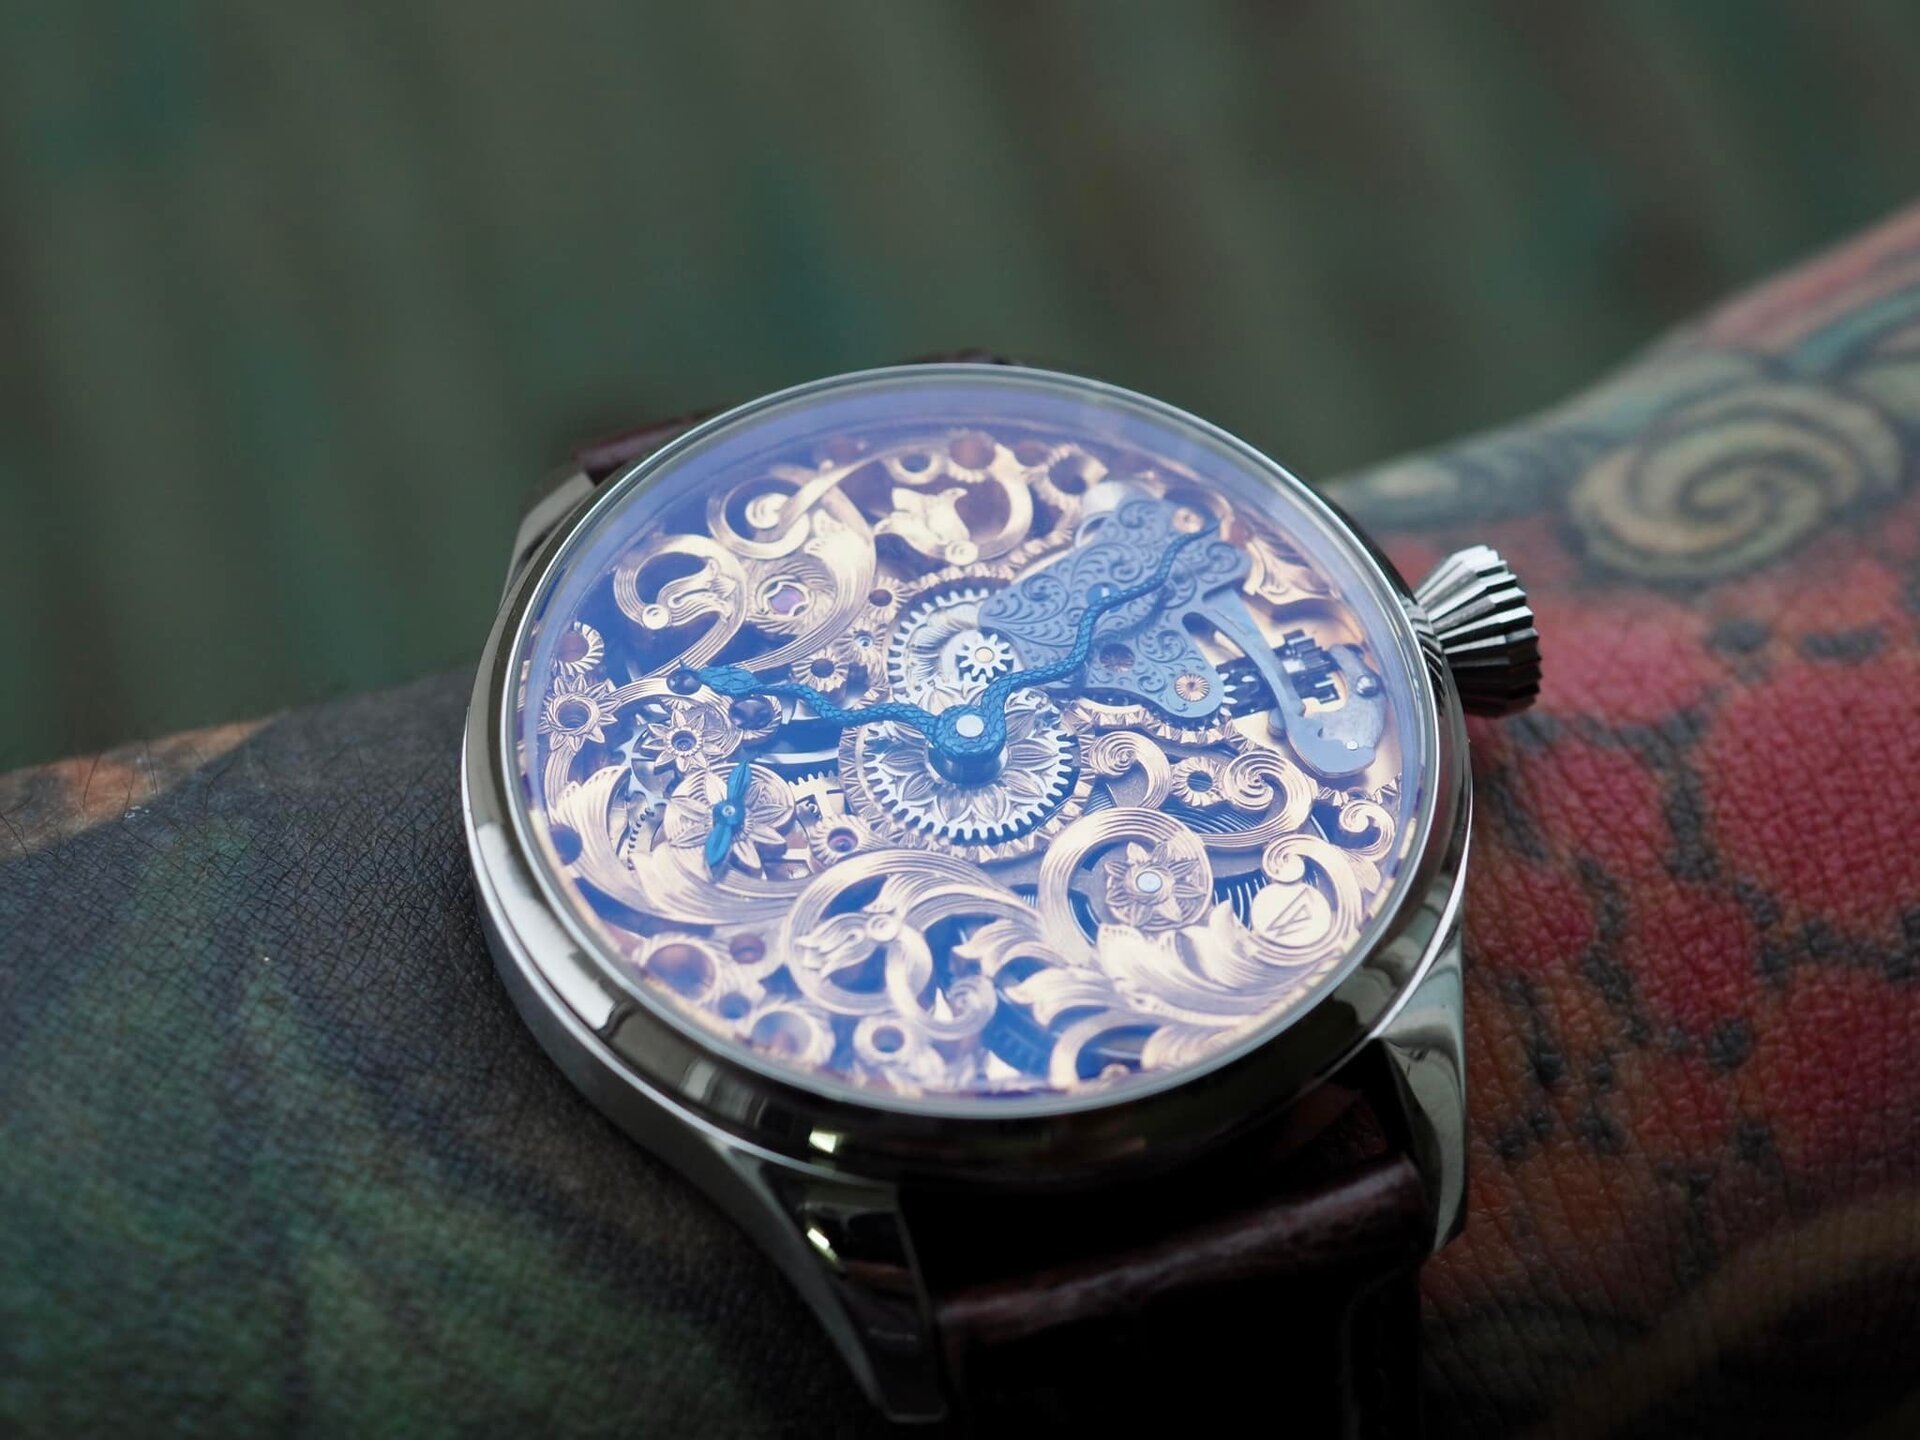 Chiếc đồng hồ bằng titan được thợ thủ công Việt định giá 300 triệu đồng - 11